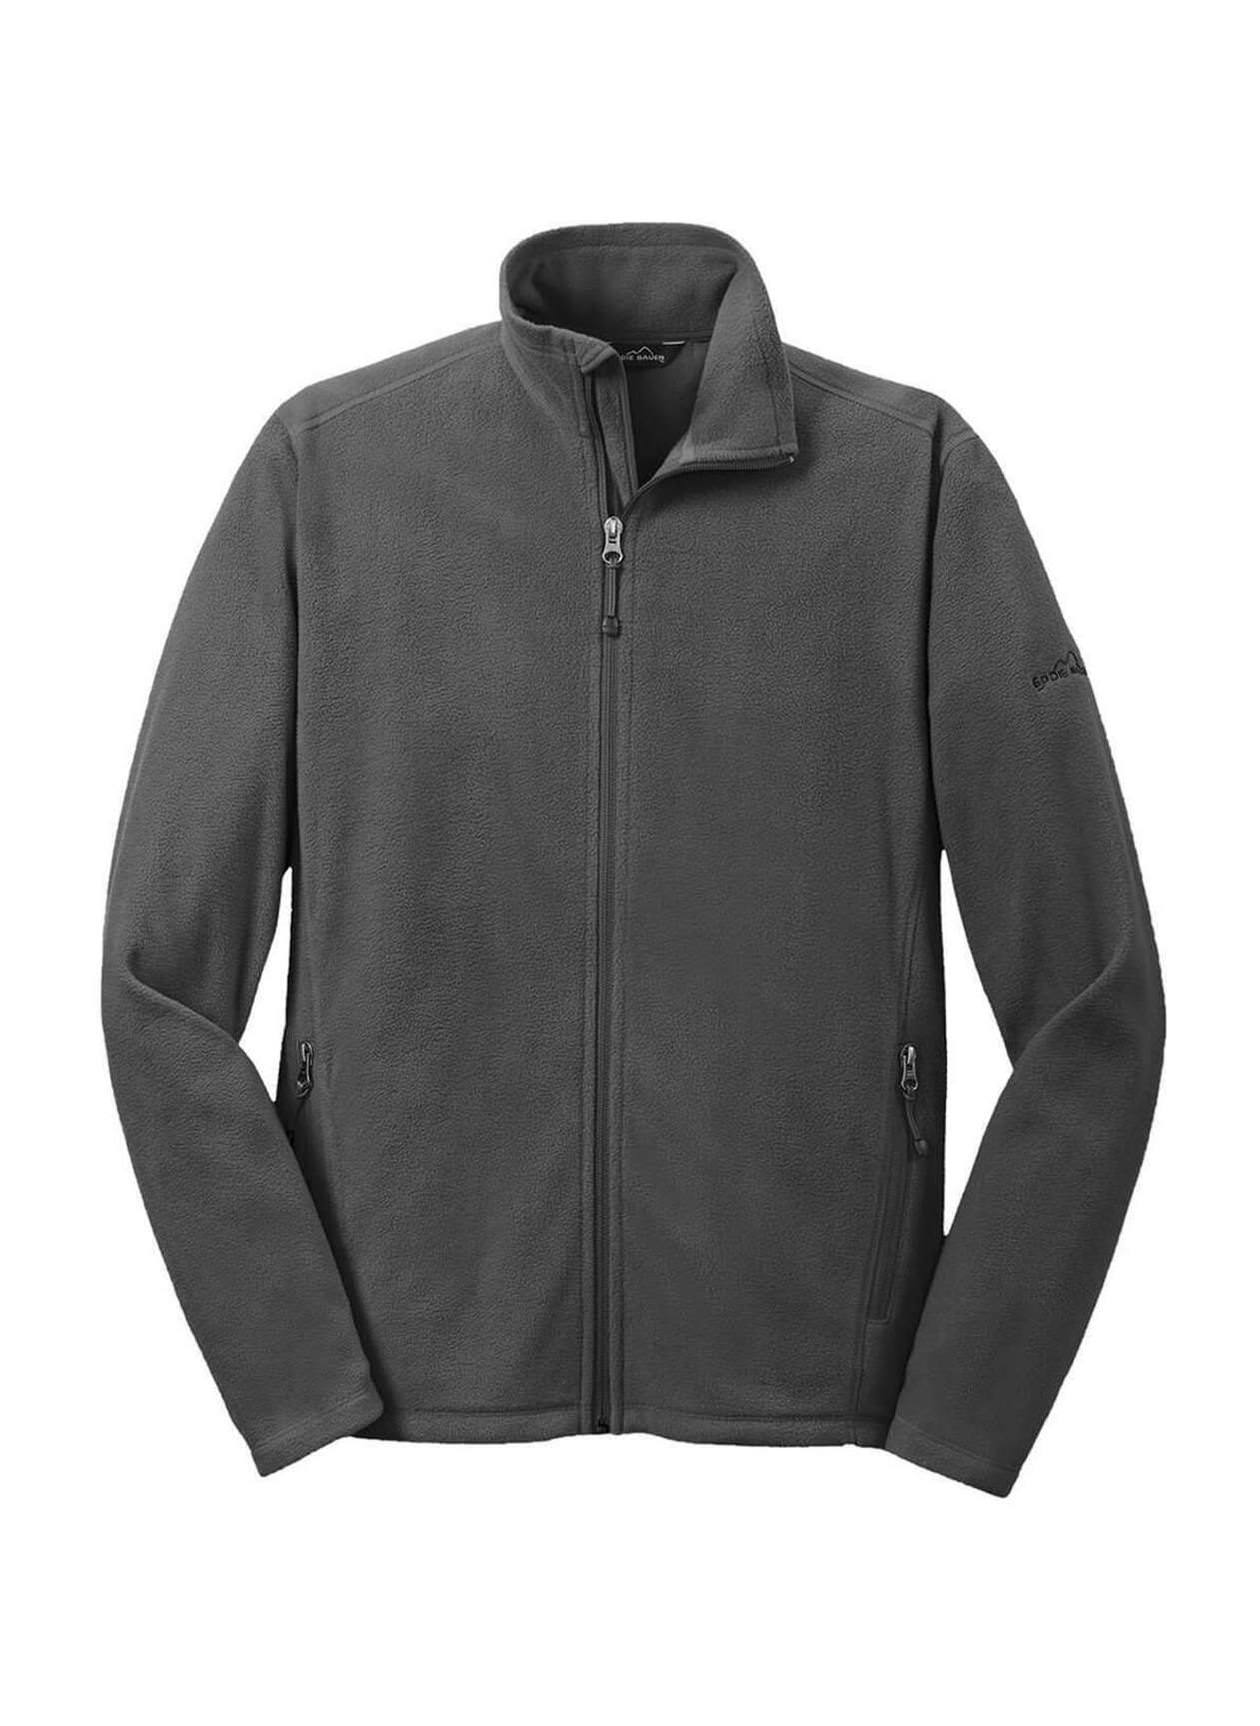 Eddie Bauer Men's Grey Steel Micro Fleece Jacket